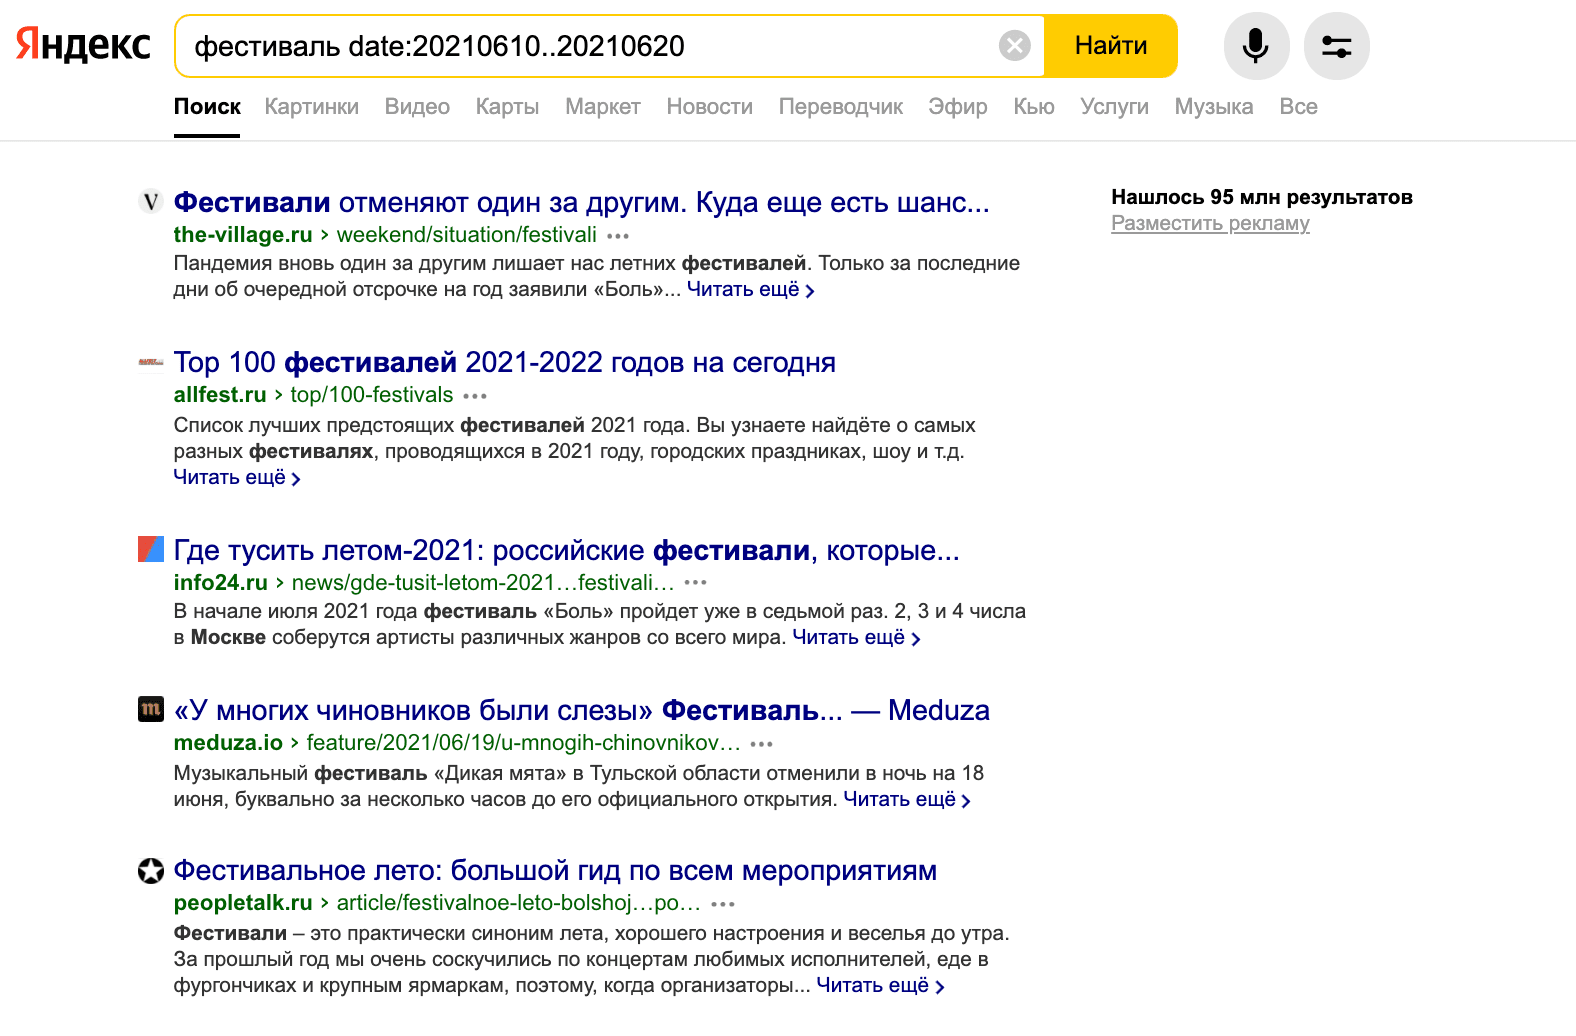 Поиск страниц в Яндексе по дате изменения 